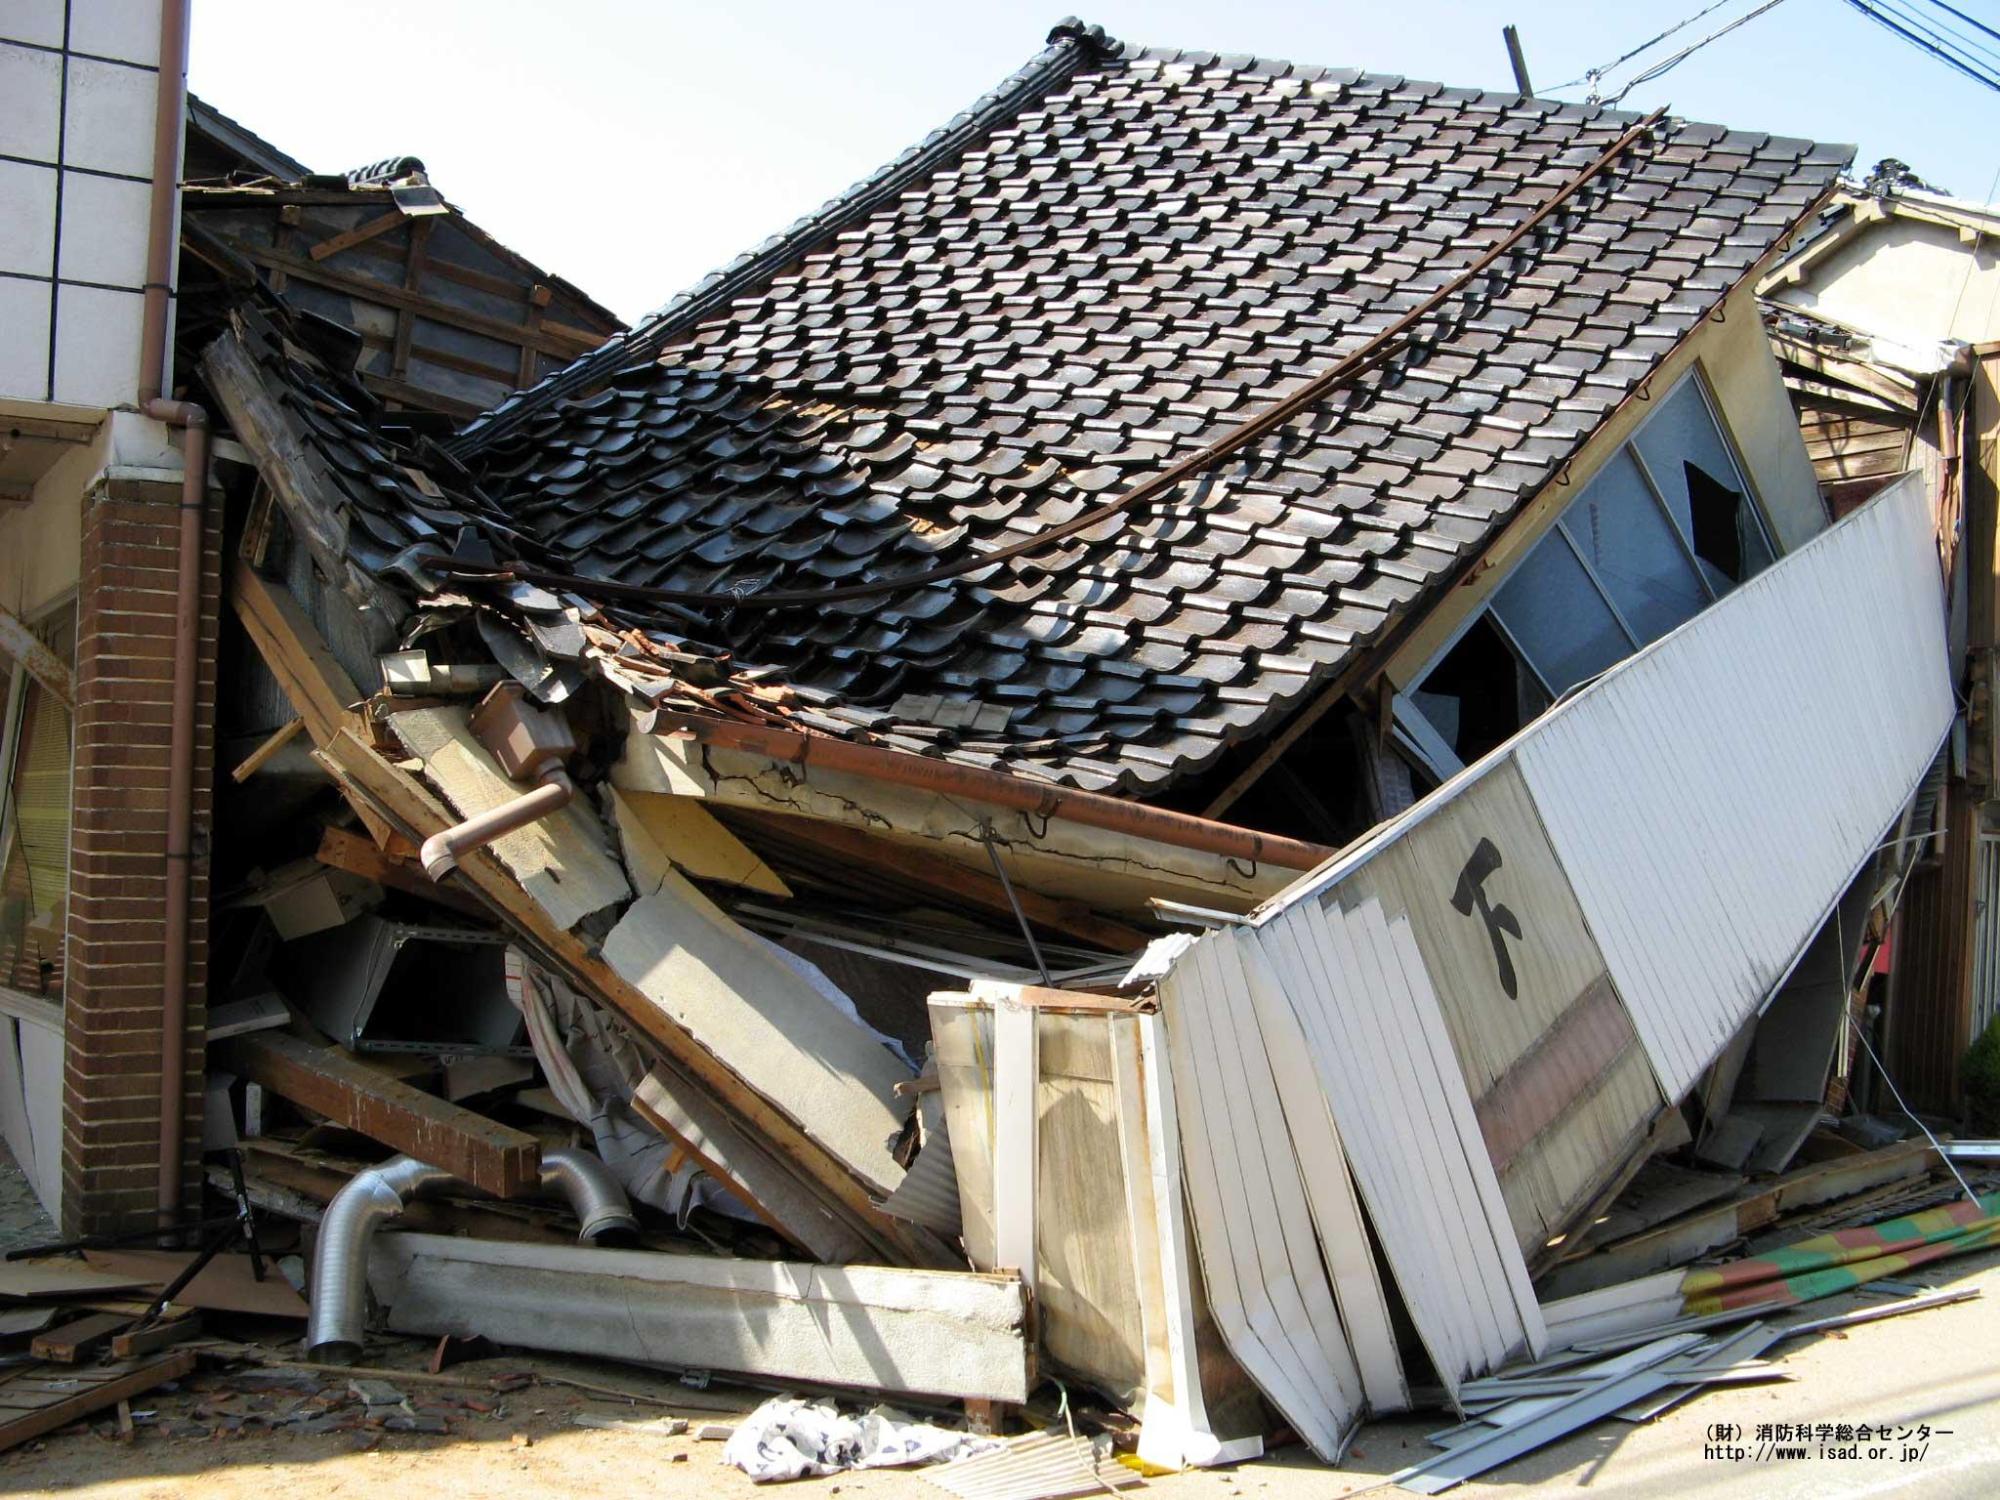 地震により柱が倒れ全壊した家を写した写真